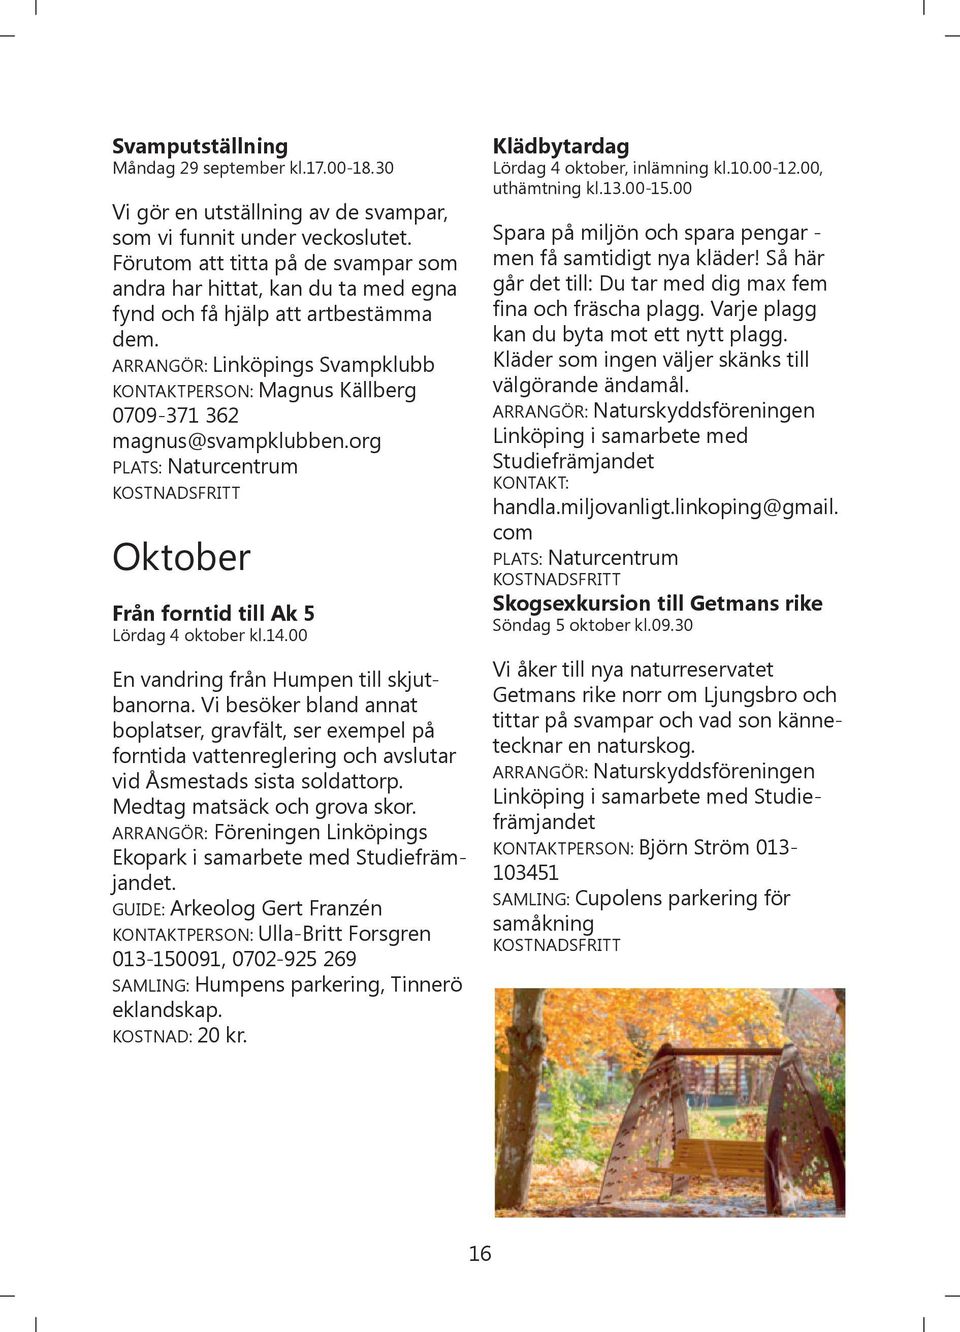 ARRANGÖR: Linköpings Svampklubb KONTAKTPERSON: Magnus Källberg 0709-371 362 magnus@svampklubben.org Oktober Från forntid till Ak 5 Lördag 4 oktober kl.14.00 En vandring från Humpen till skjutbanorna.